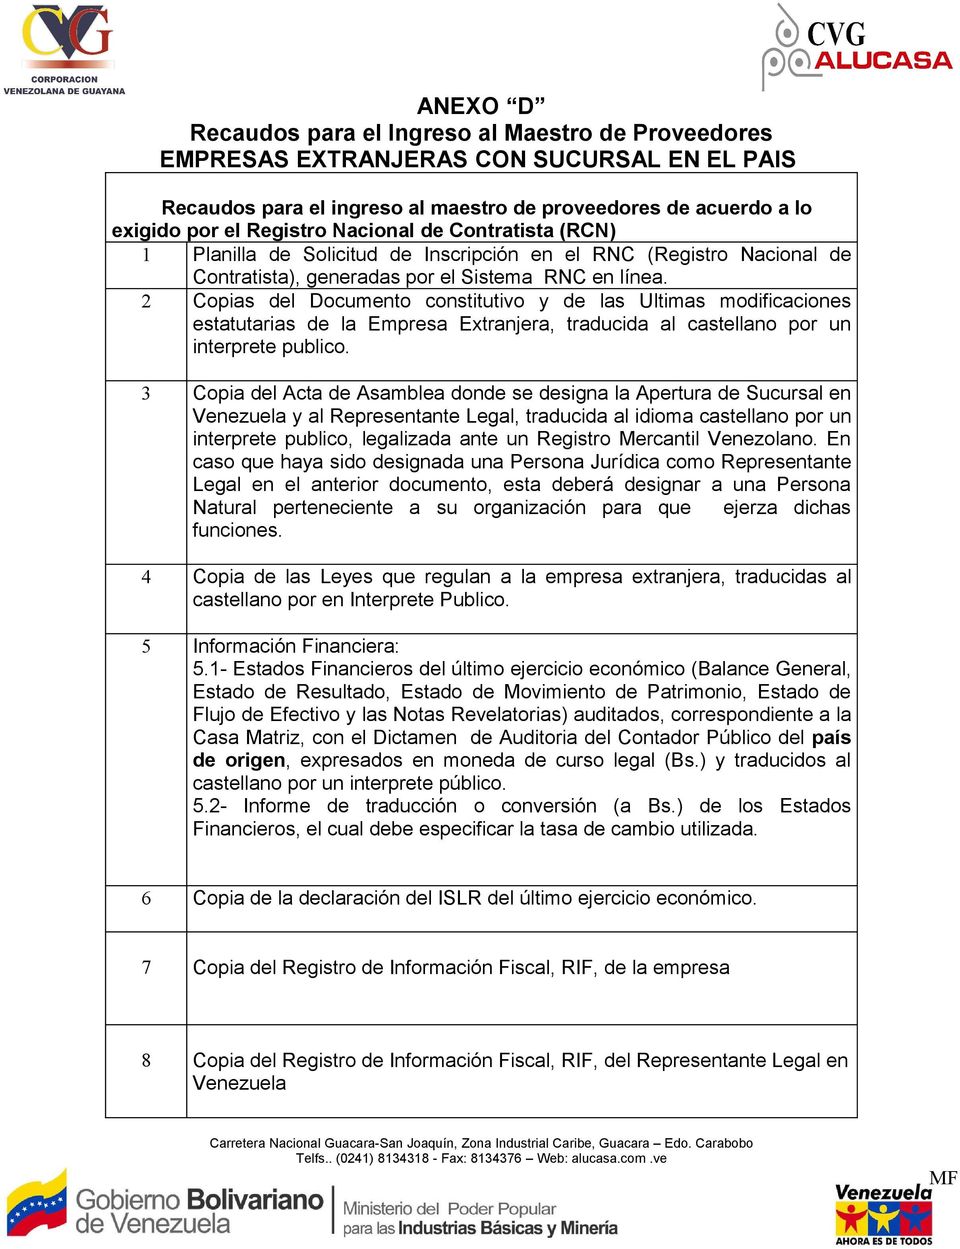 2 Copias del Documento constitutivo y de las Ultimas modificaciones estatutarias de la Empresa Extranjera, traducida al castellano por un interprete publico.